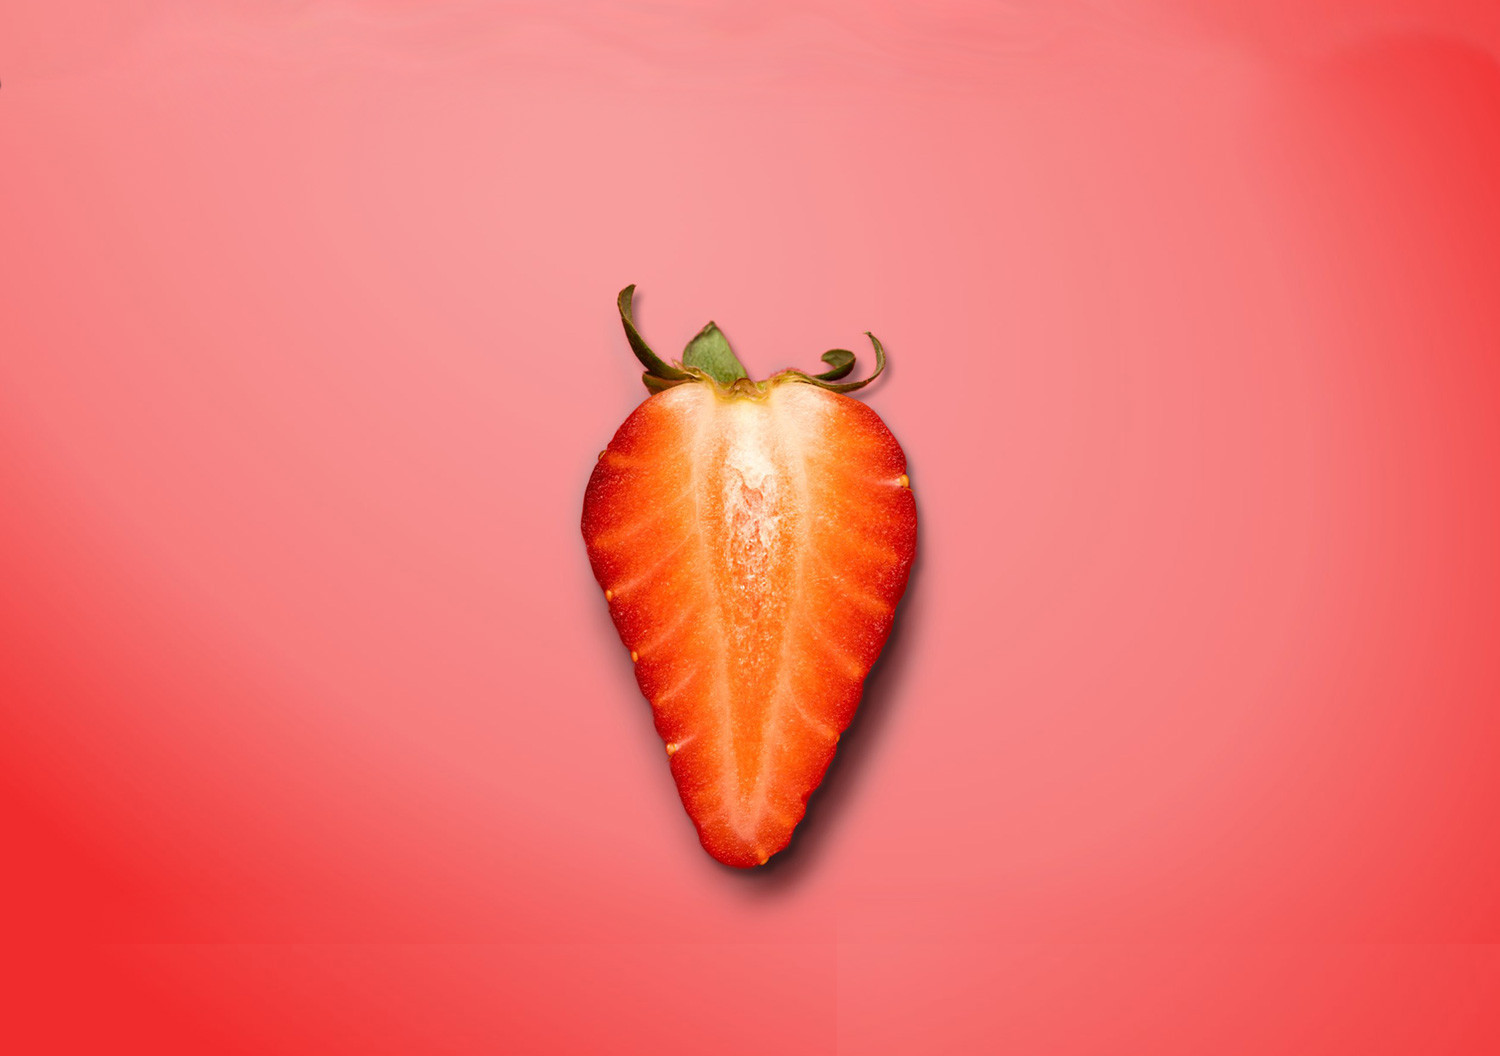 Der Länge nach halbierte Erdbeere, die an eine Vulva erinnert.